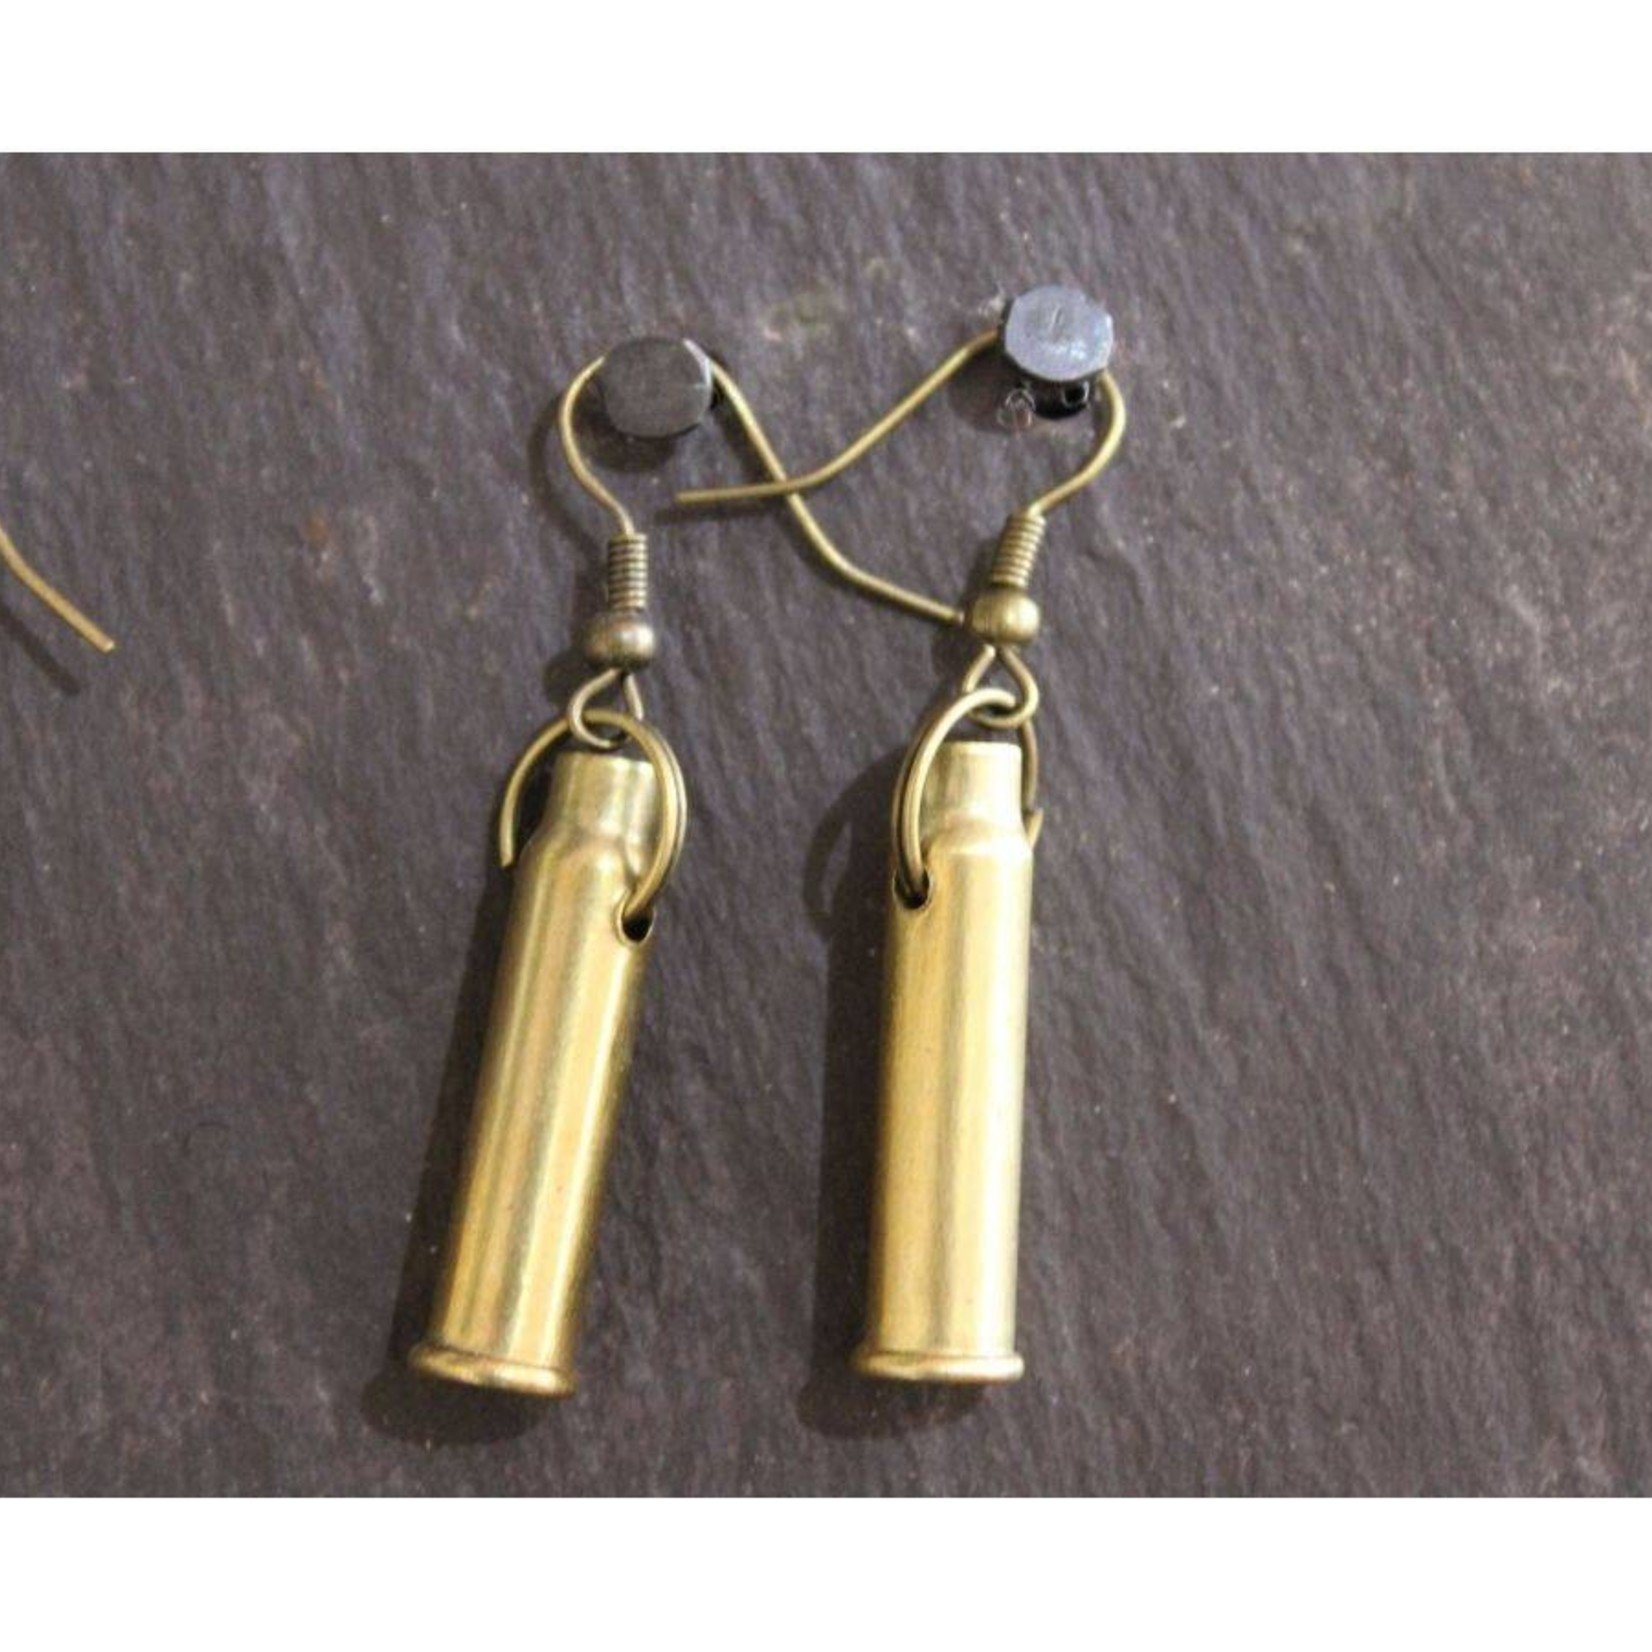 J Boult Upcycled Bullet Earrings Brass Fittings